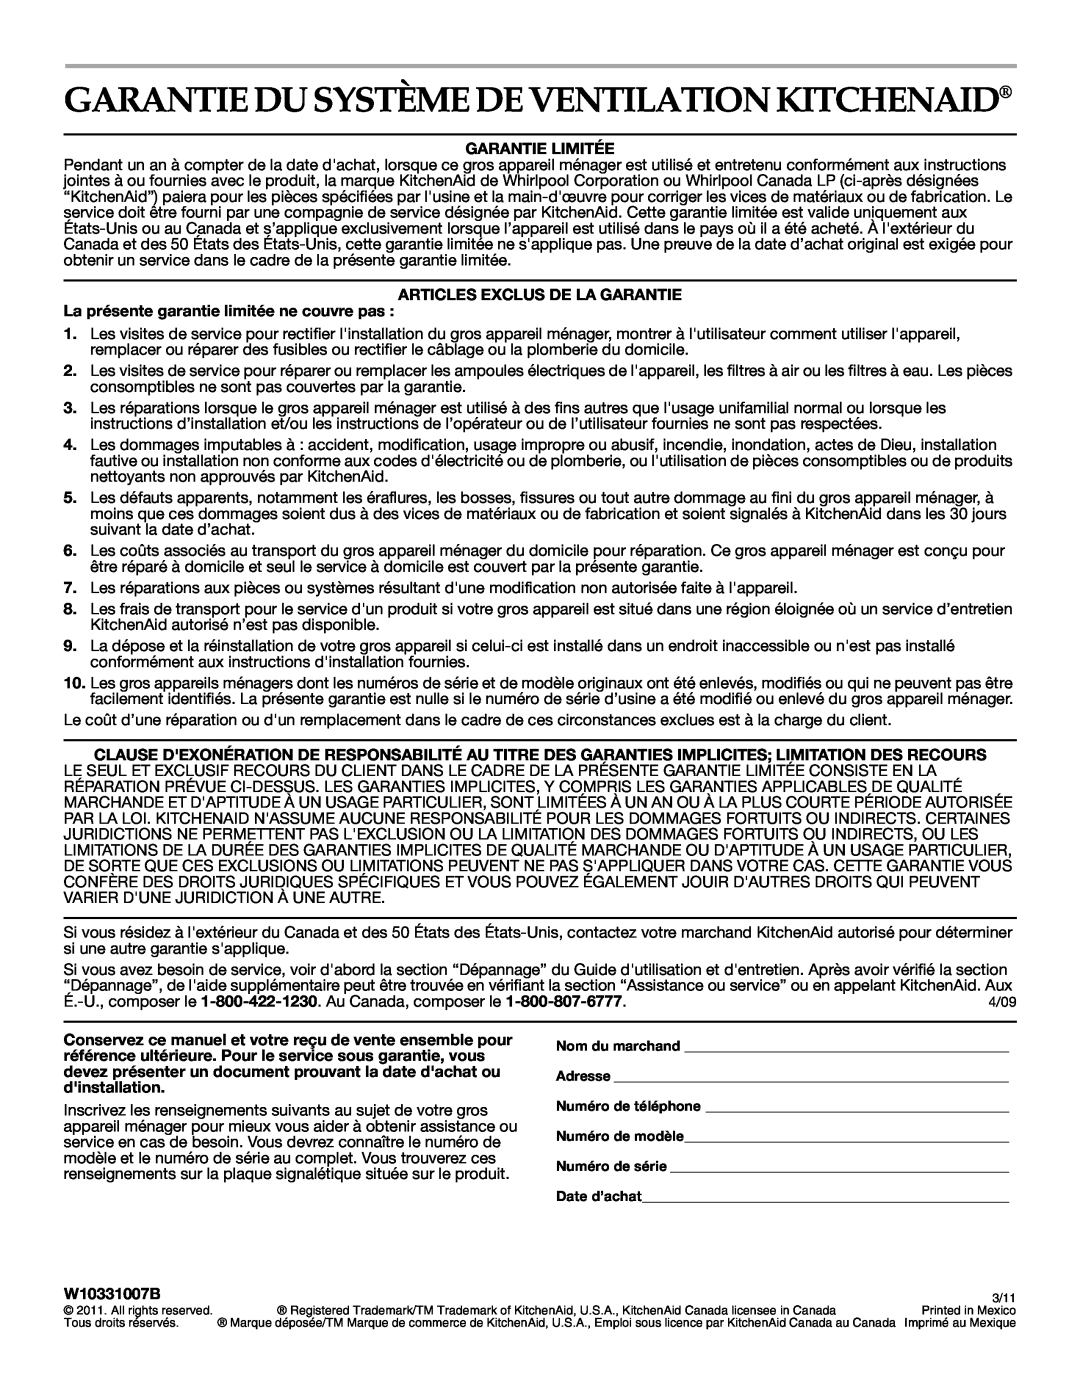 KitchenAid W10331007B Garantie Du Système De Ventilation Kitchenaid, Garantie Limitée, Articles Exclus De La Garantie 